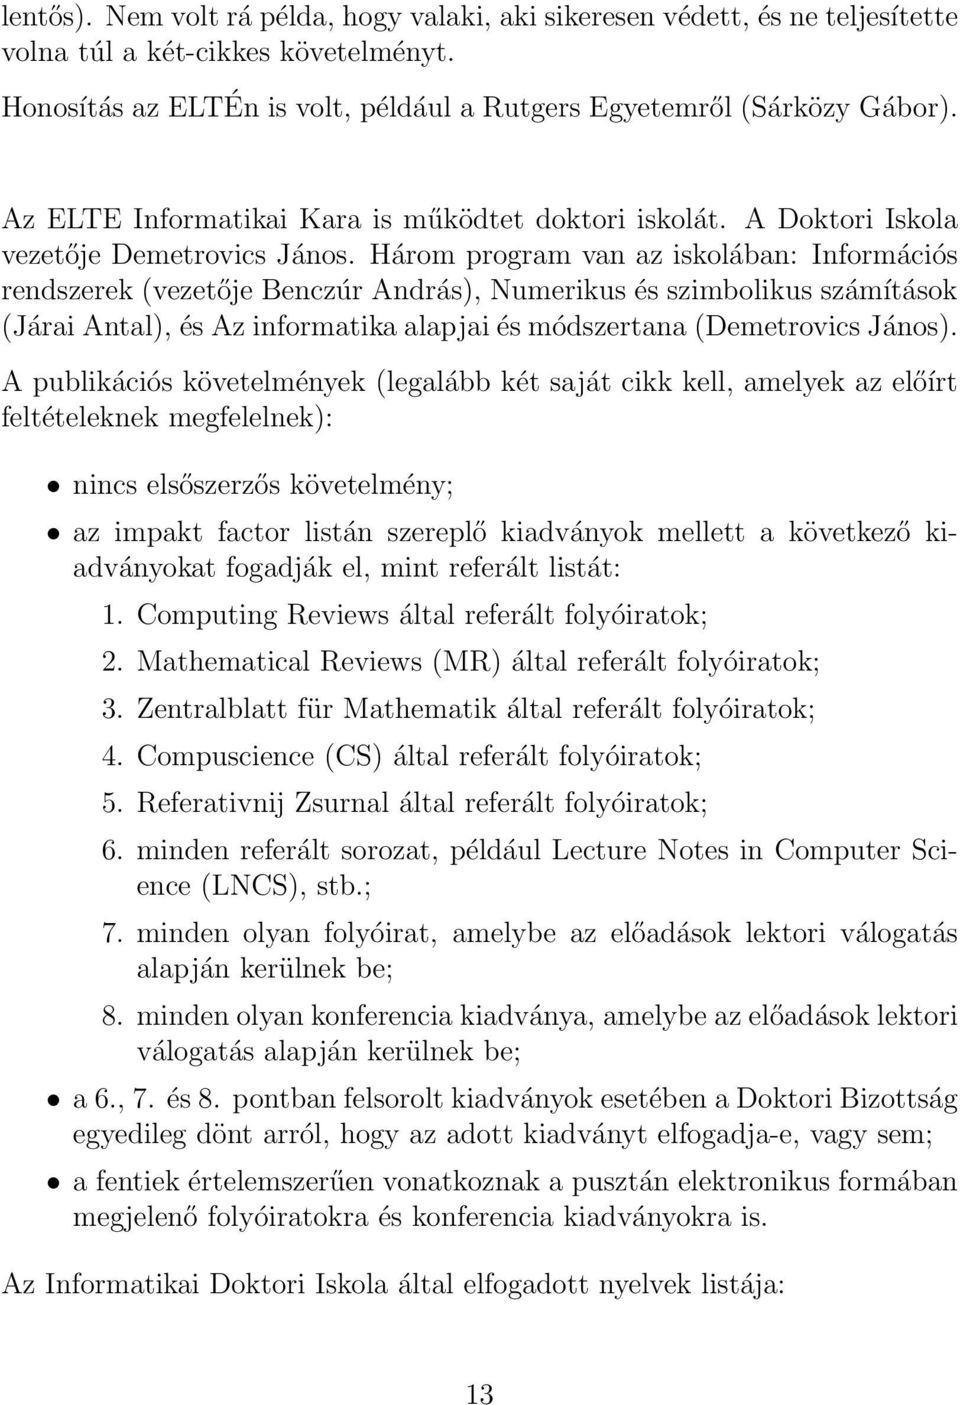 Három program van az iskolában: Információs rendszerek (vezetője Benczúr András), Numerikus és szimbolikus számítások (Járai Antal), és Az informatika alapjai és módszertana (Demetrovics János).